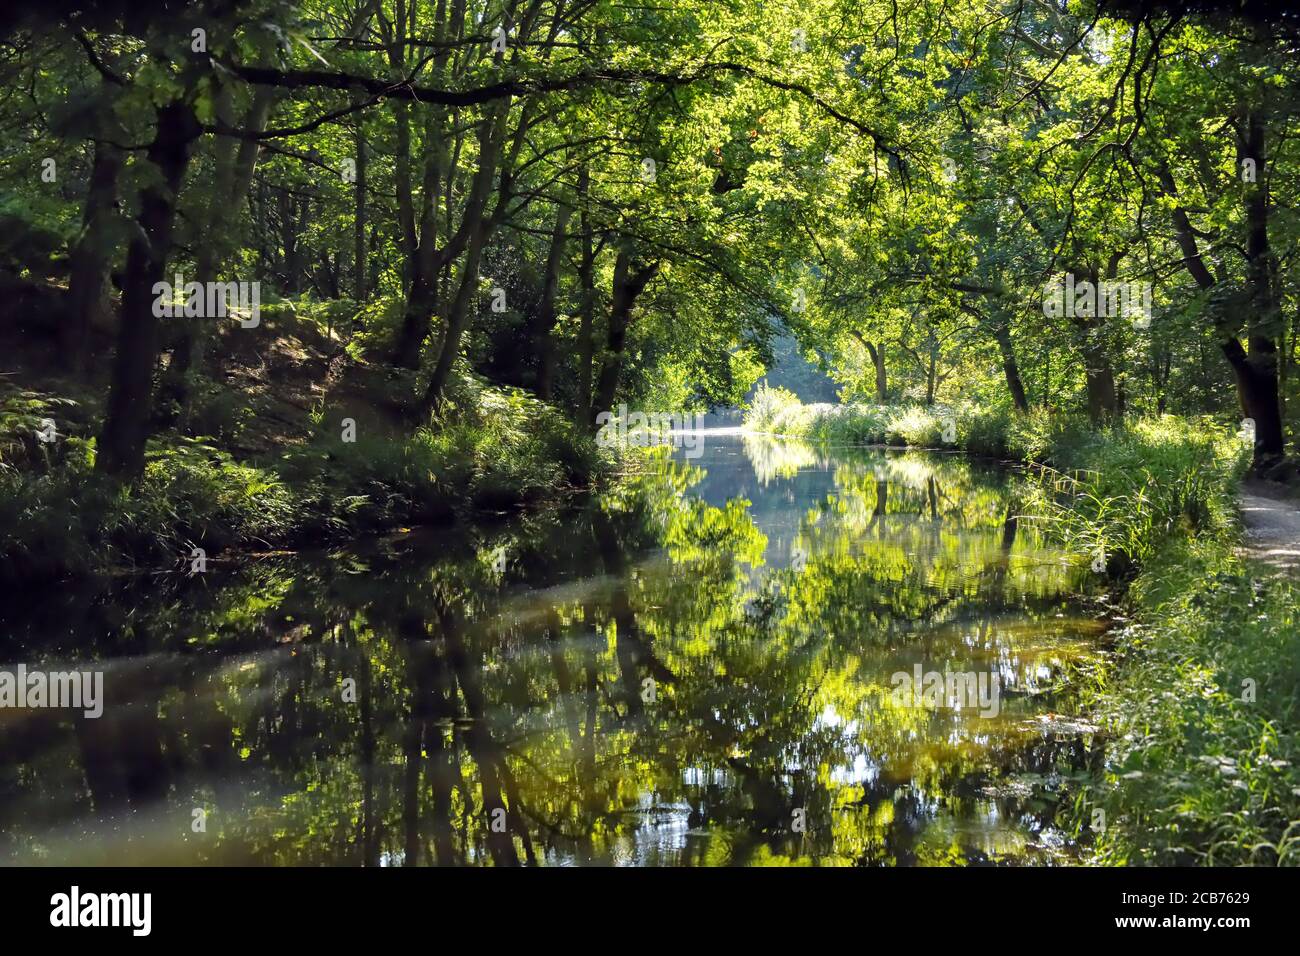 Leuchtend grüne Farben entlang des schönen Basingstoke Canal in Surrey In diesem Foto an einem warmen Tag am aufgenommen Hochsommer Stockfoto